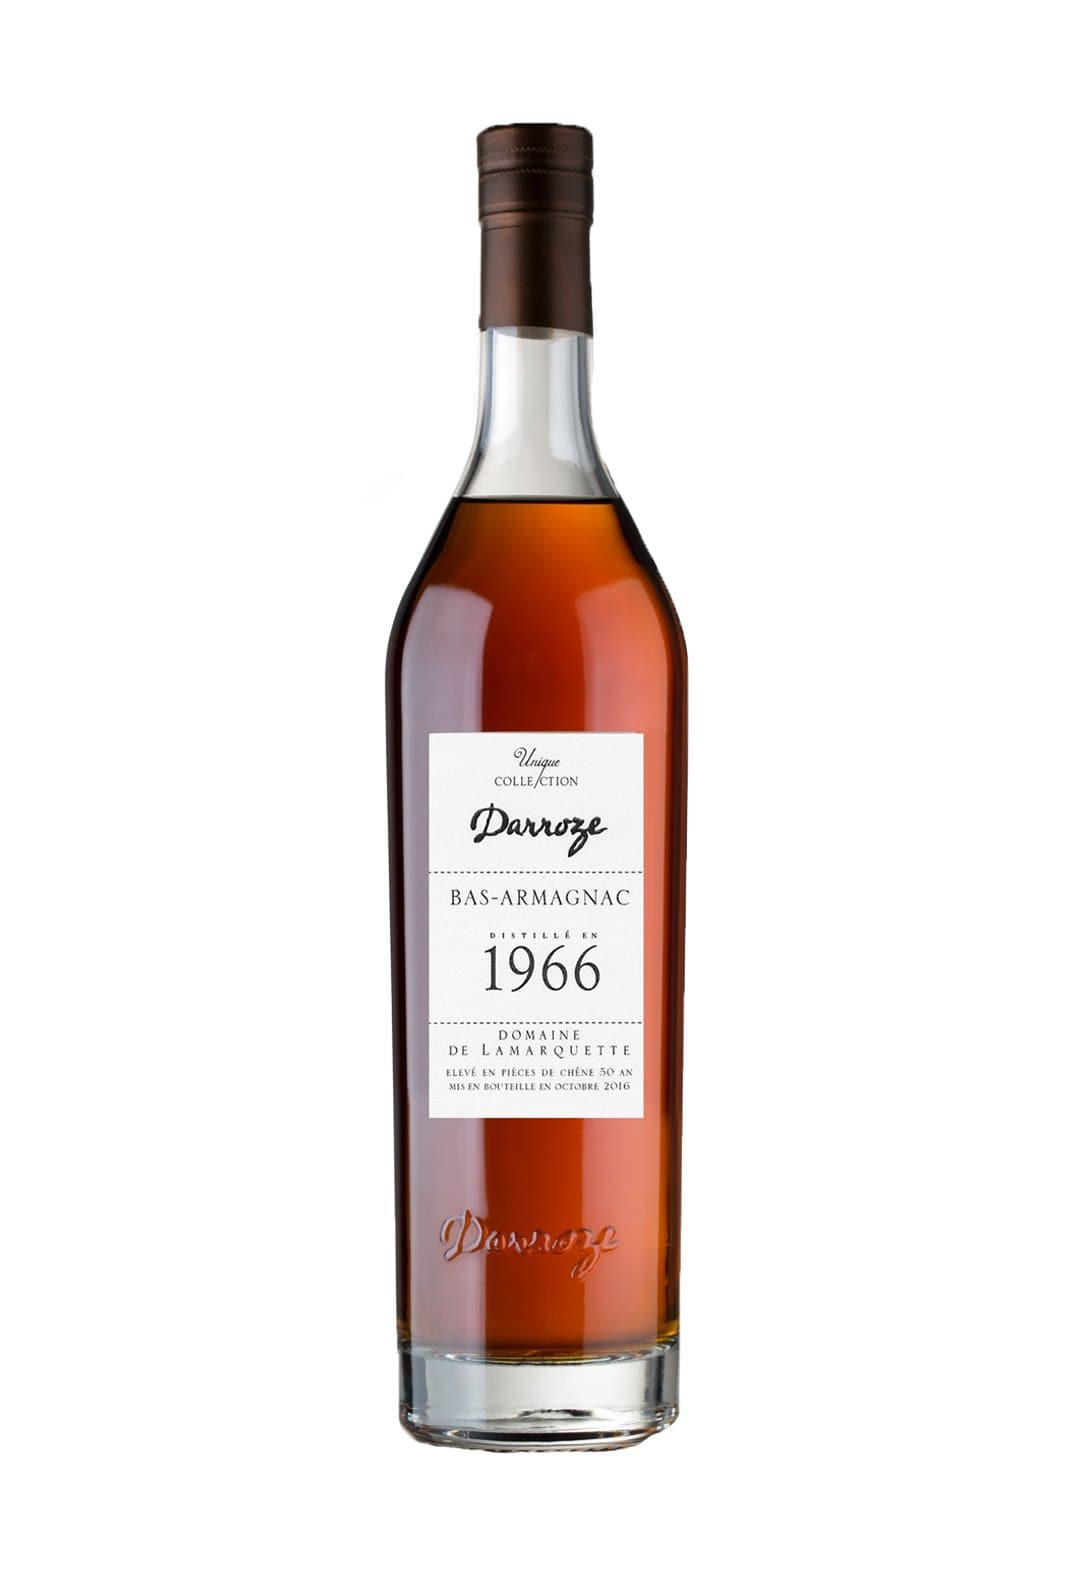 Darroze Bas-Armagnac Domaine de Lamarquette ˆ Castandet 1966 44% 700ml | Brandy | Shop online at Spirits of France